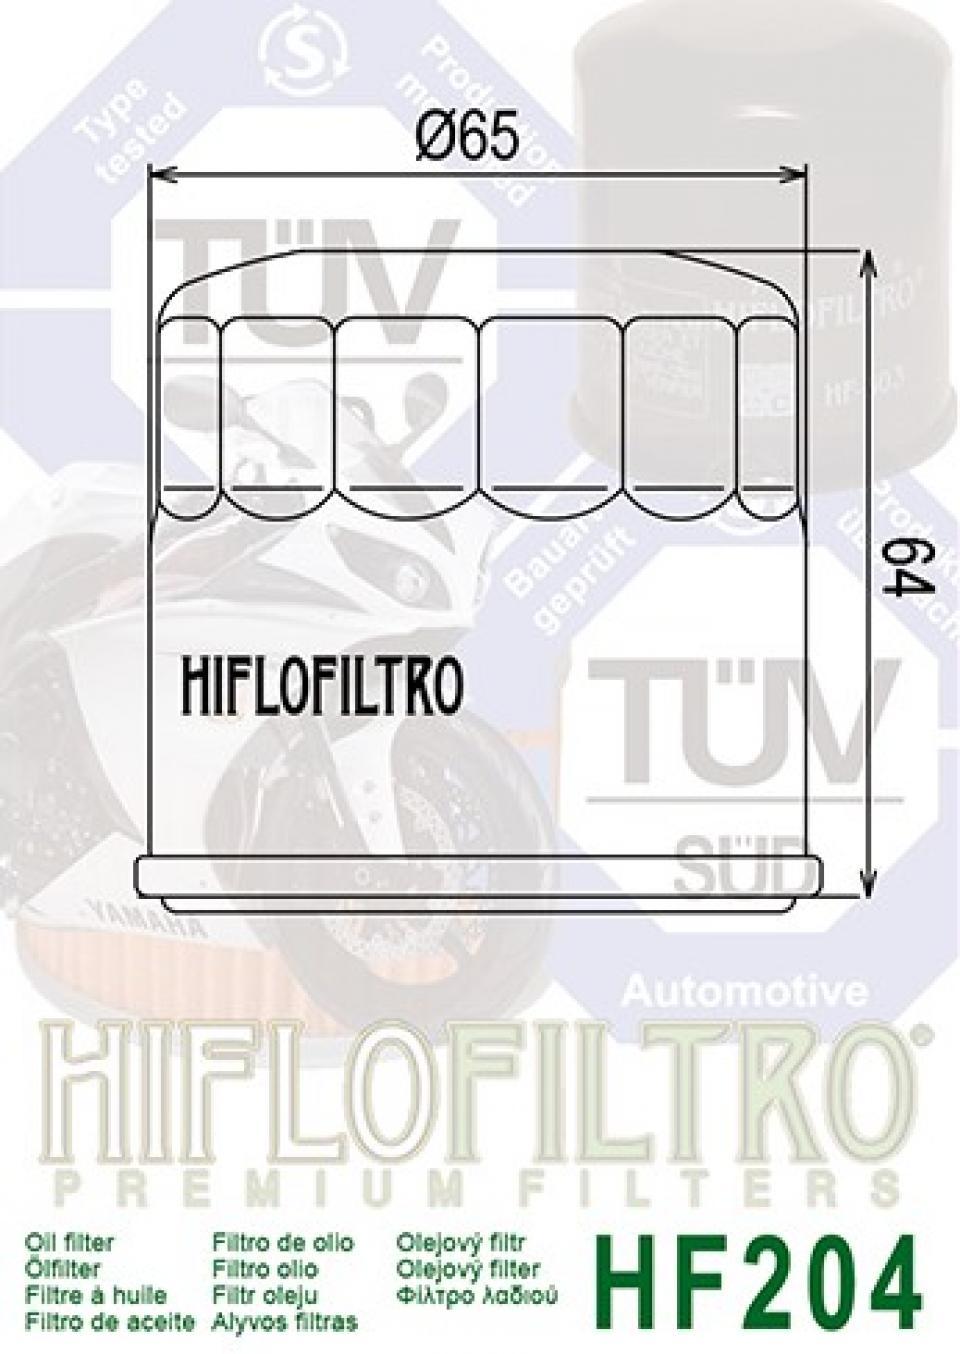 Filtre à huile Hiflofiltro pour Moto Honda 1800 Vtx C 2002 à 2008 Neuf